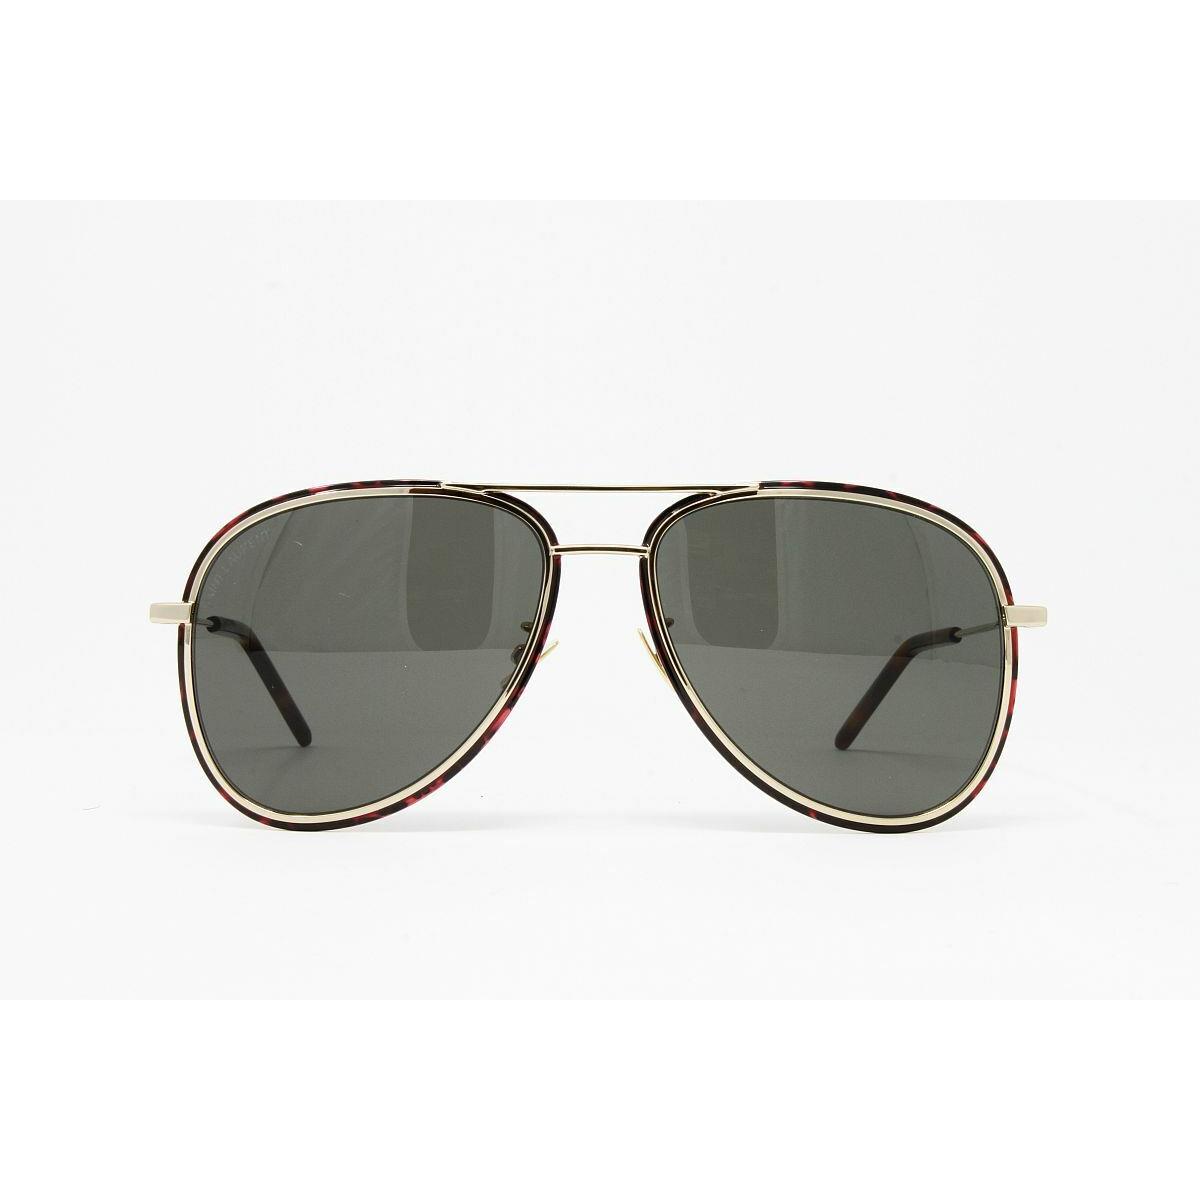 Yves Saint Laurent sunglasses  - Gold Frame, Gray Lens 0